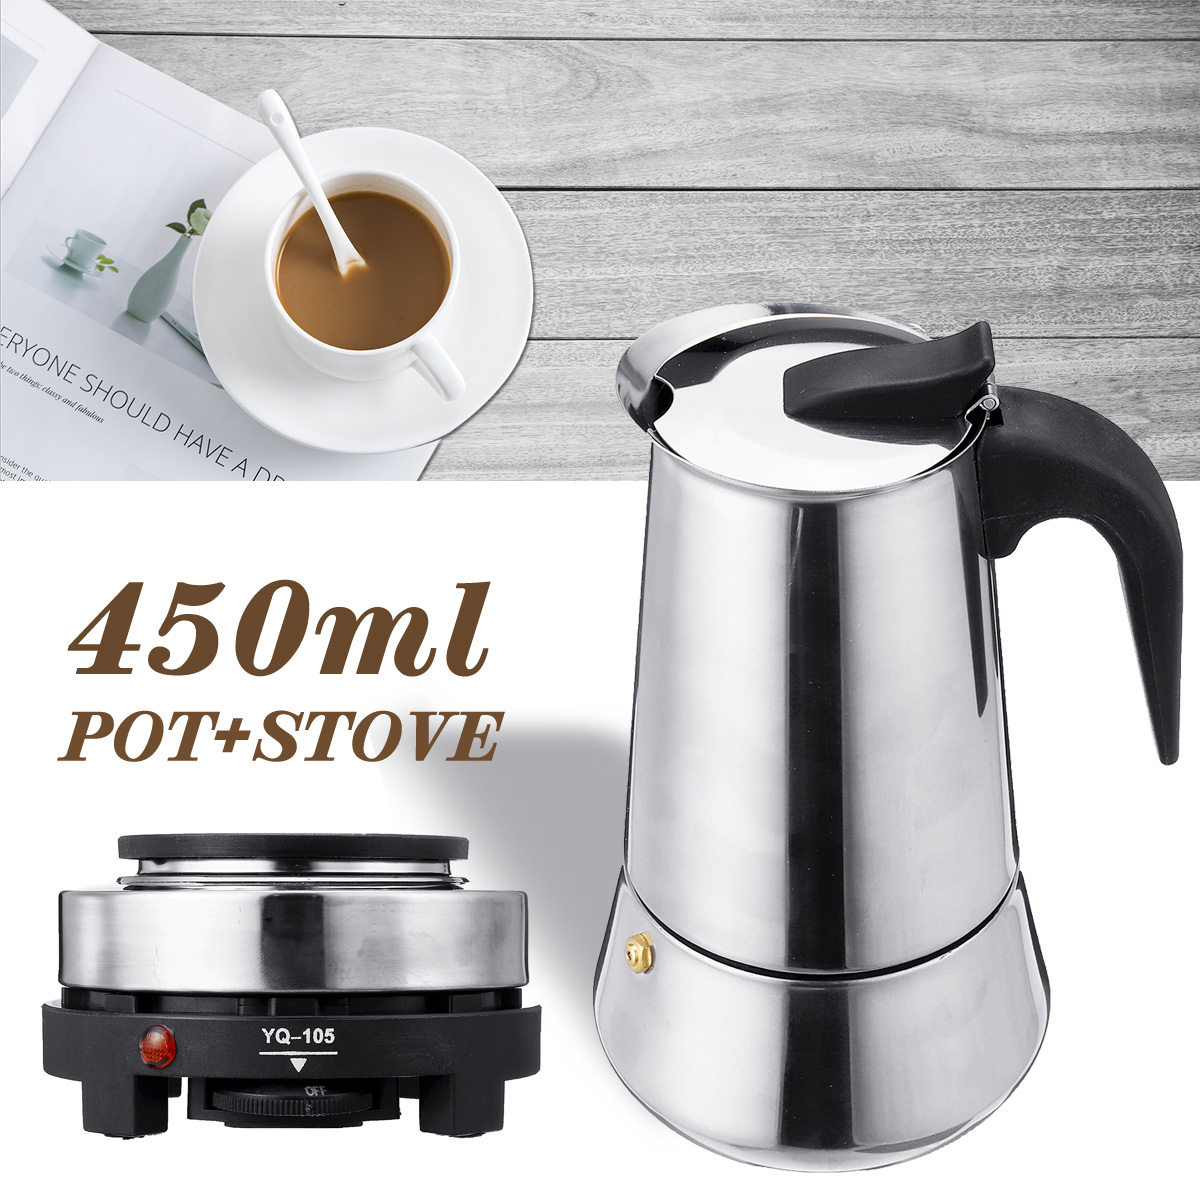 220V 500W 450ml Portable Coffee Espresso Pot Maker & Electric Stove Home Kitchen Tools 64